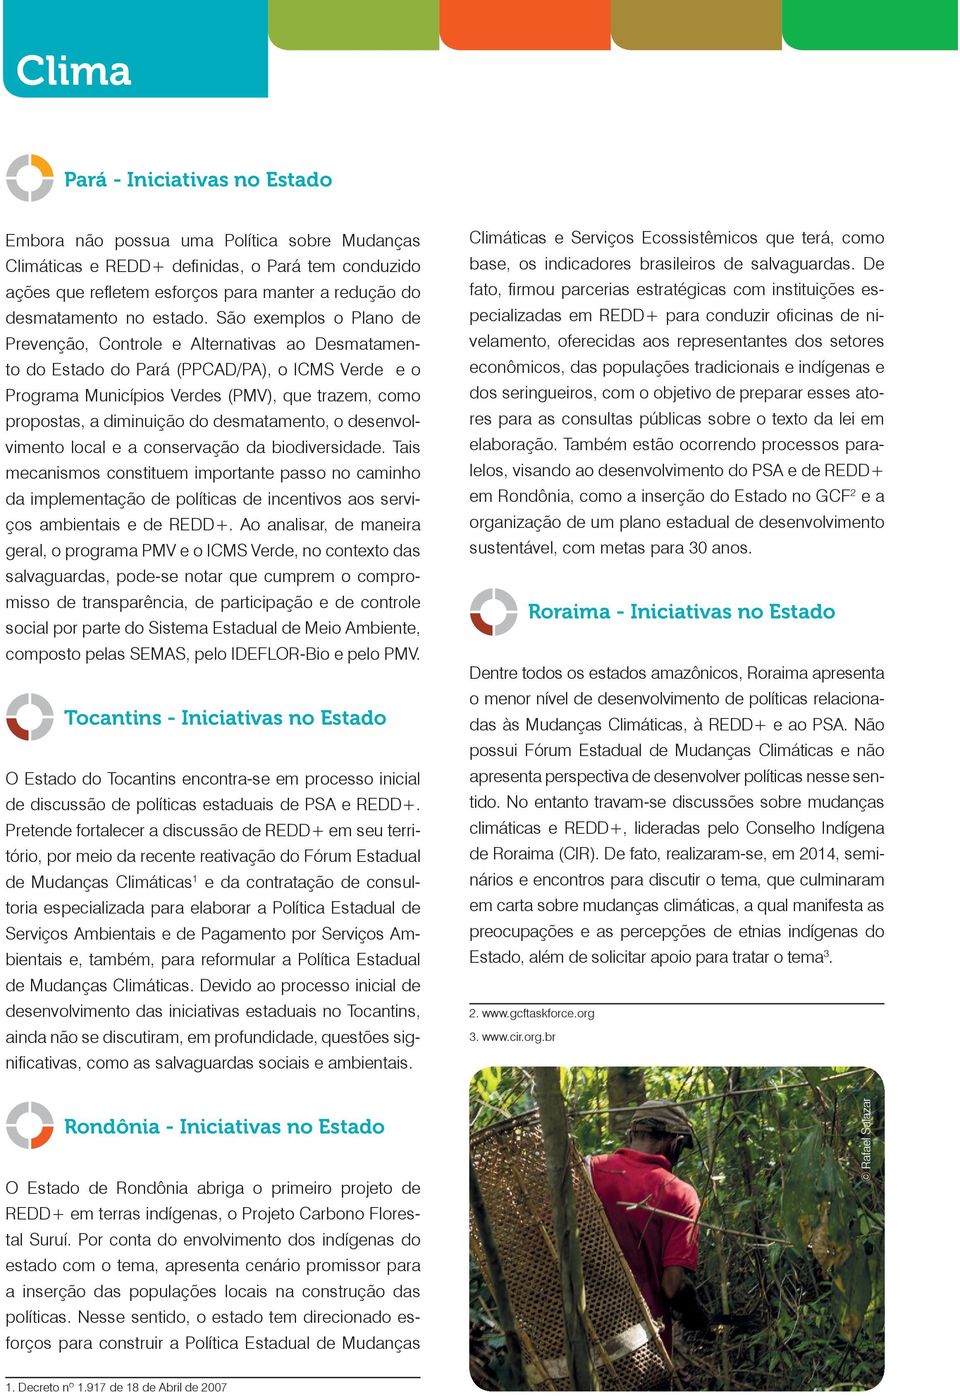 São exemplos o Plano de Prevenção, Controle e Alternativas ao Desmatamento do Estado do Pará (PPCAD/PA), o ICMS Verde e o Programa Municípios Verdes (PMV), que trazem, como propostas, a diminuição do